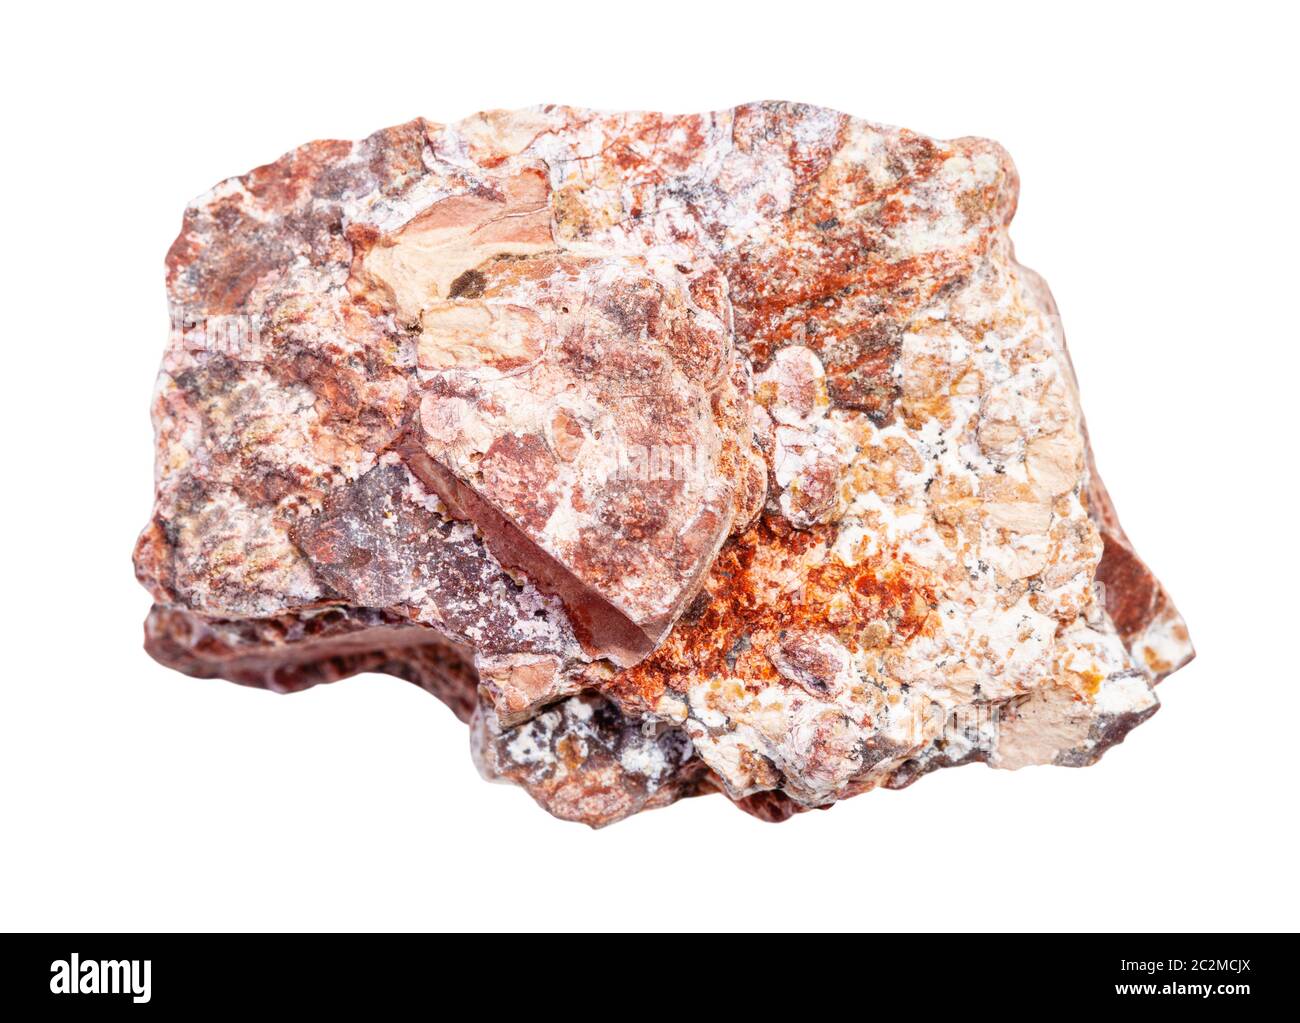 Nahaufnahme der natürlichen Mineralprobe aus der geologischen Sammlung - Stück roher Rhyolitgestein isoliert auf weißem Grund Stockfoto